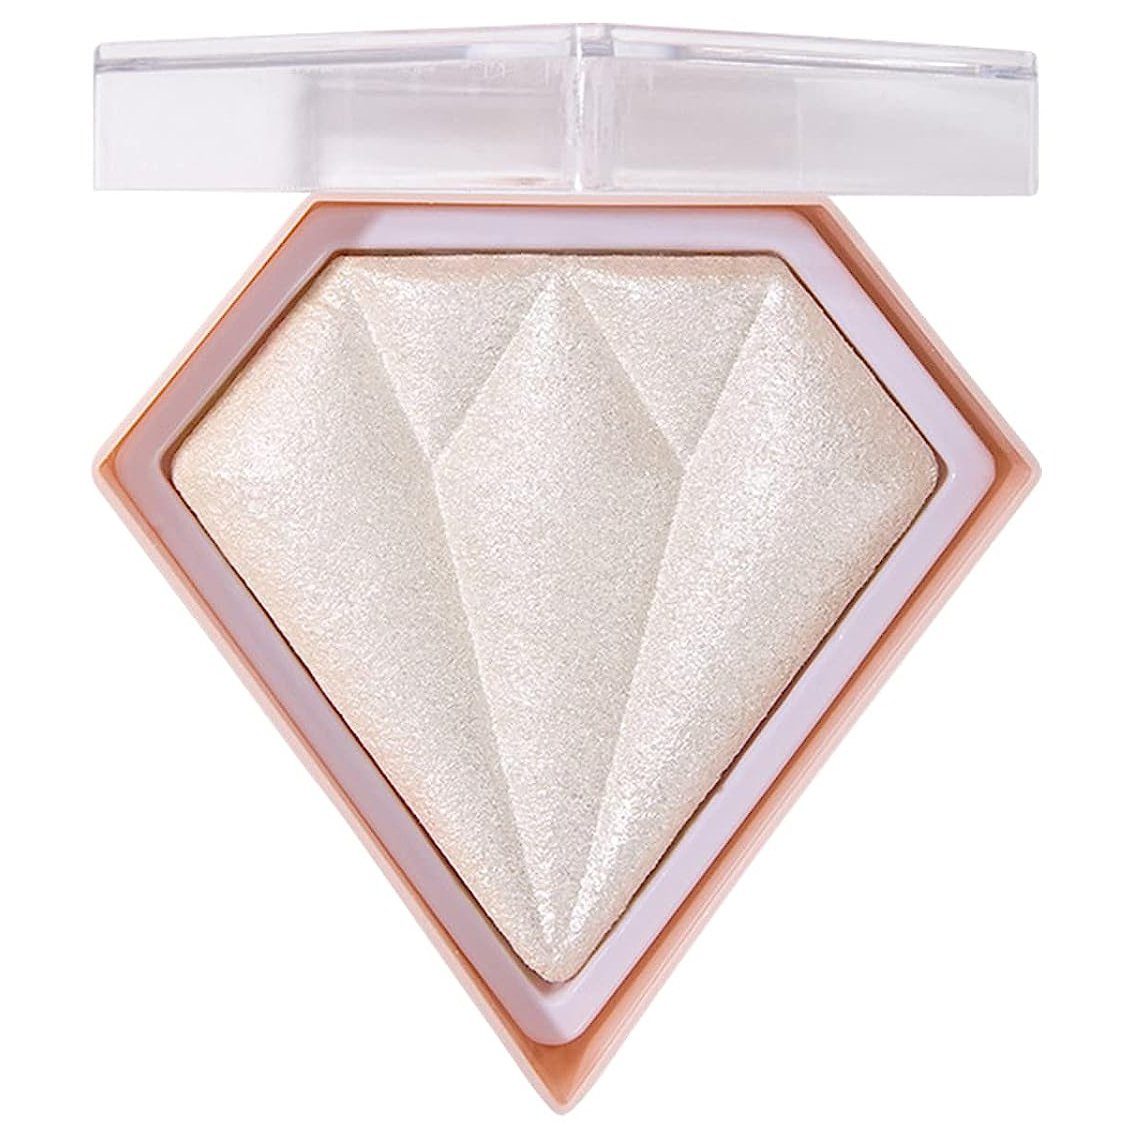 Diamant-Leuchtpuder-Palette, Highlighter Nude- natürliches white und Haiaveng Konturen-Make-up glänzendes für